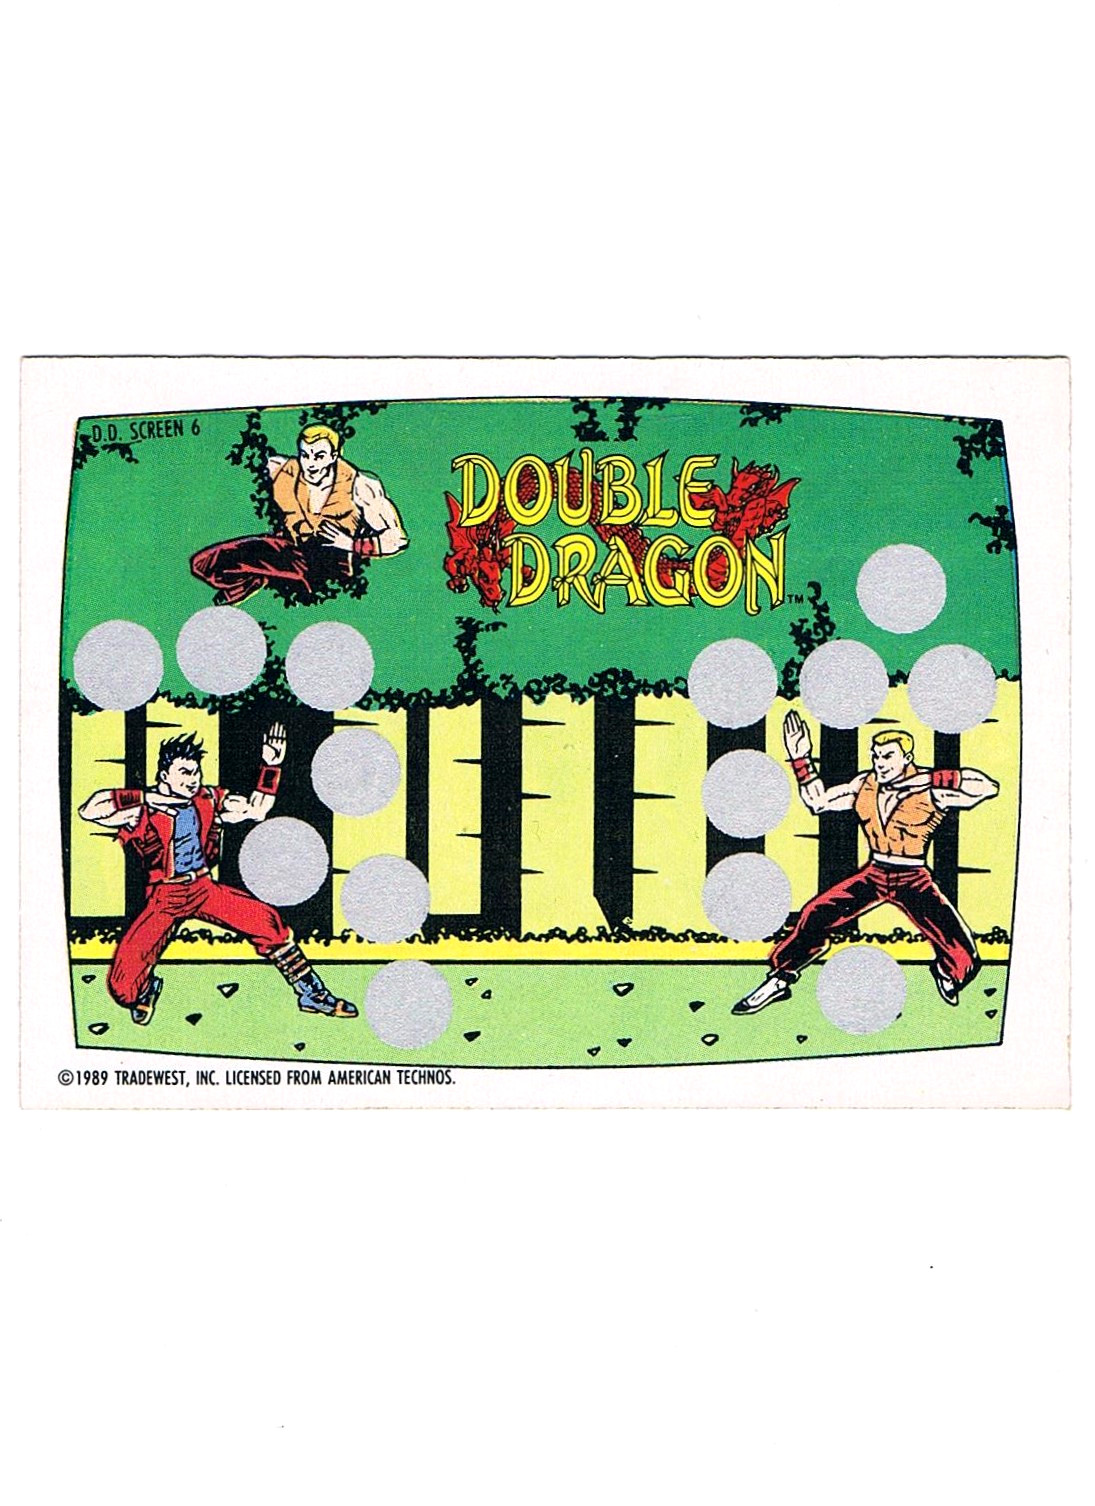 Double Dragon - Screen 6 O-Pee-Chee / Nintendo 1989